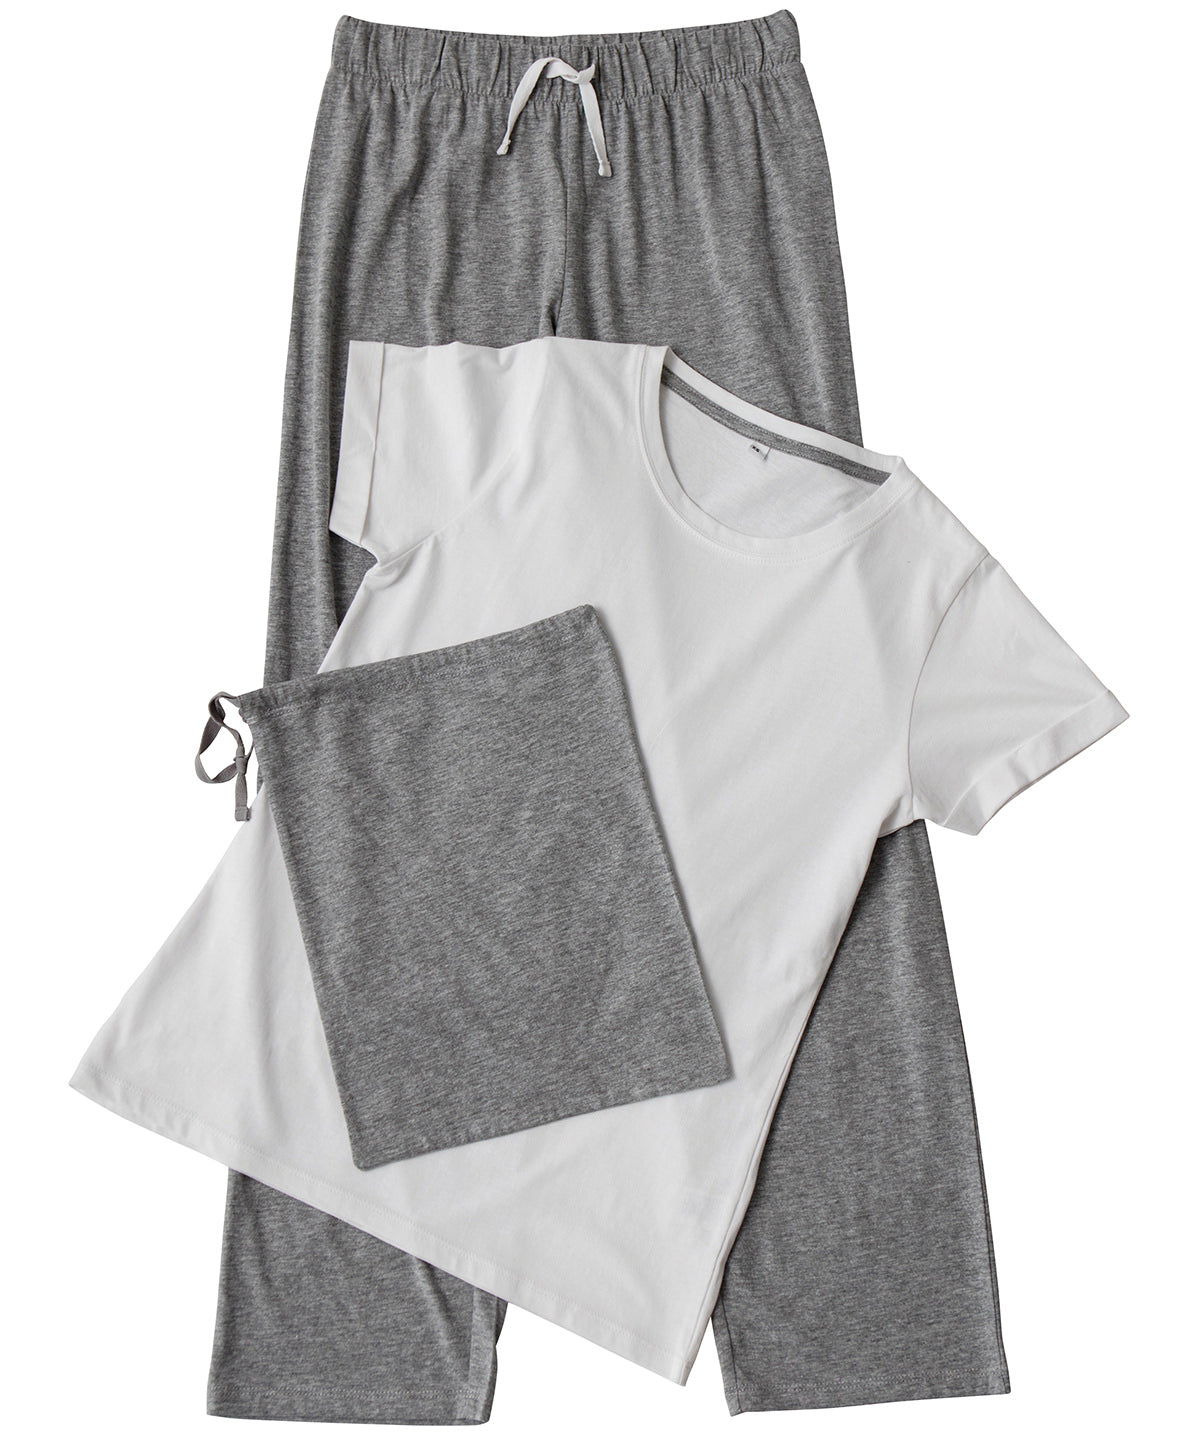 Náttföt - Women's Long Pant Pyjama Set (in A Bag)